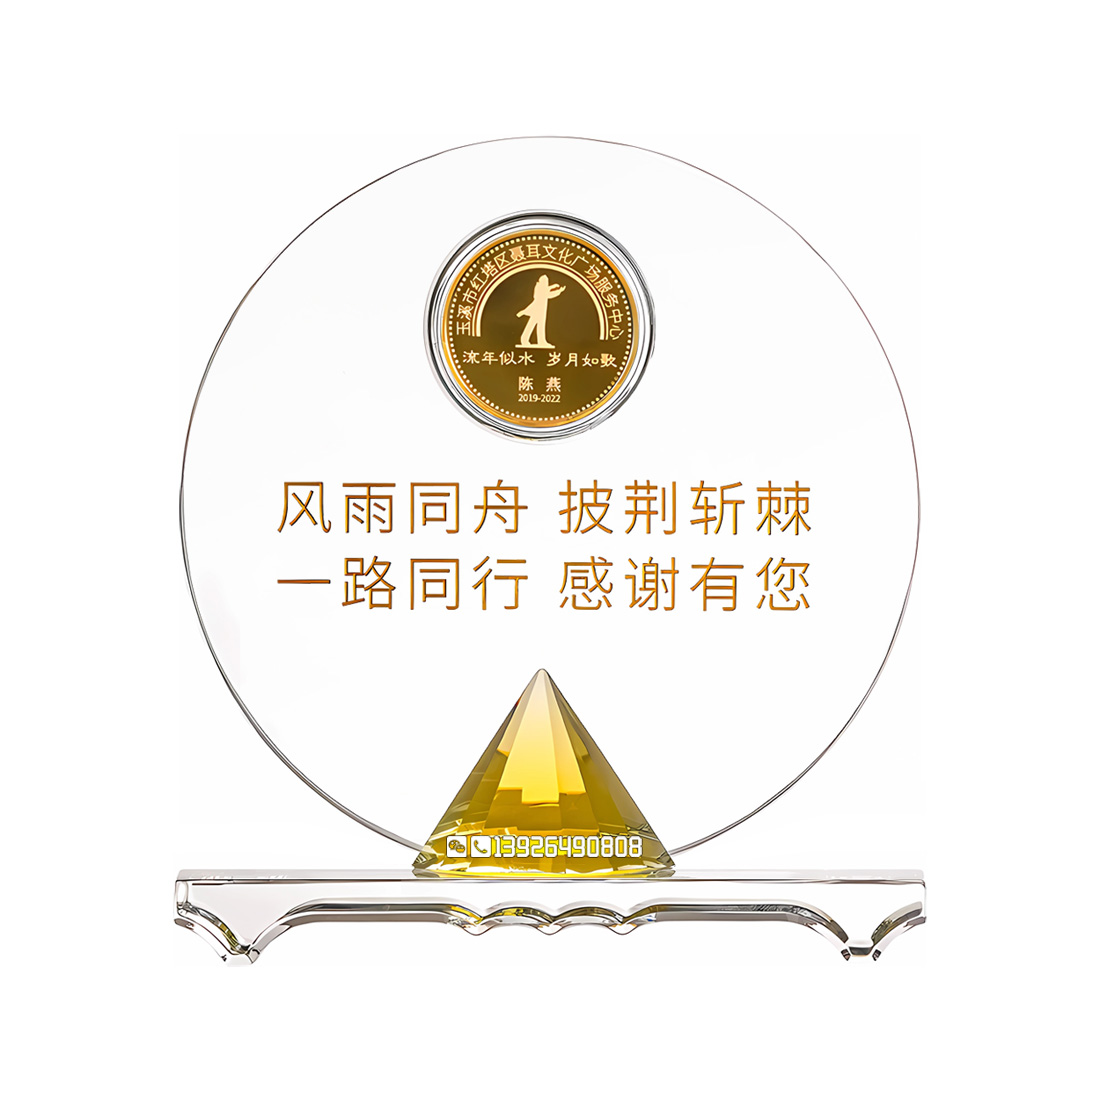 北京k9水晶奖杯摆件镶金币纪念币员工荣誉颁奖创意水晶奖牌厂家